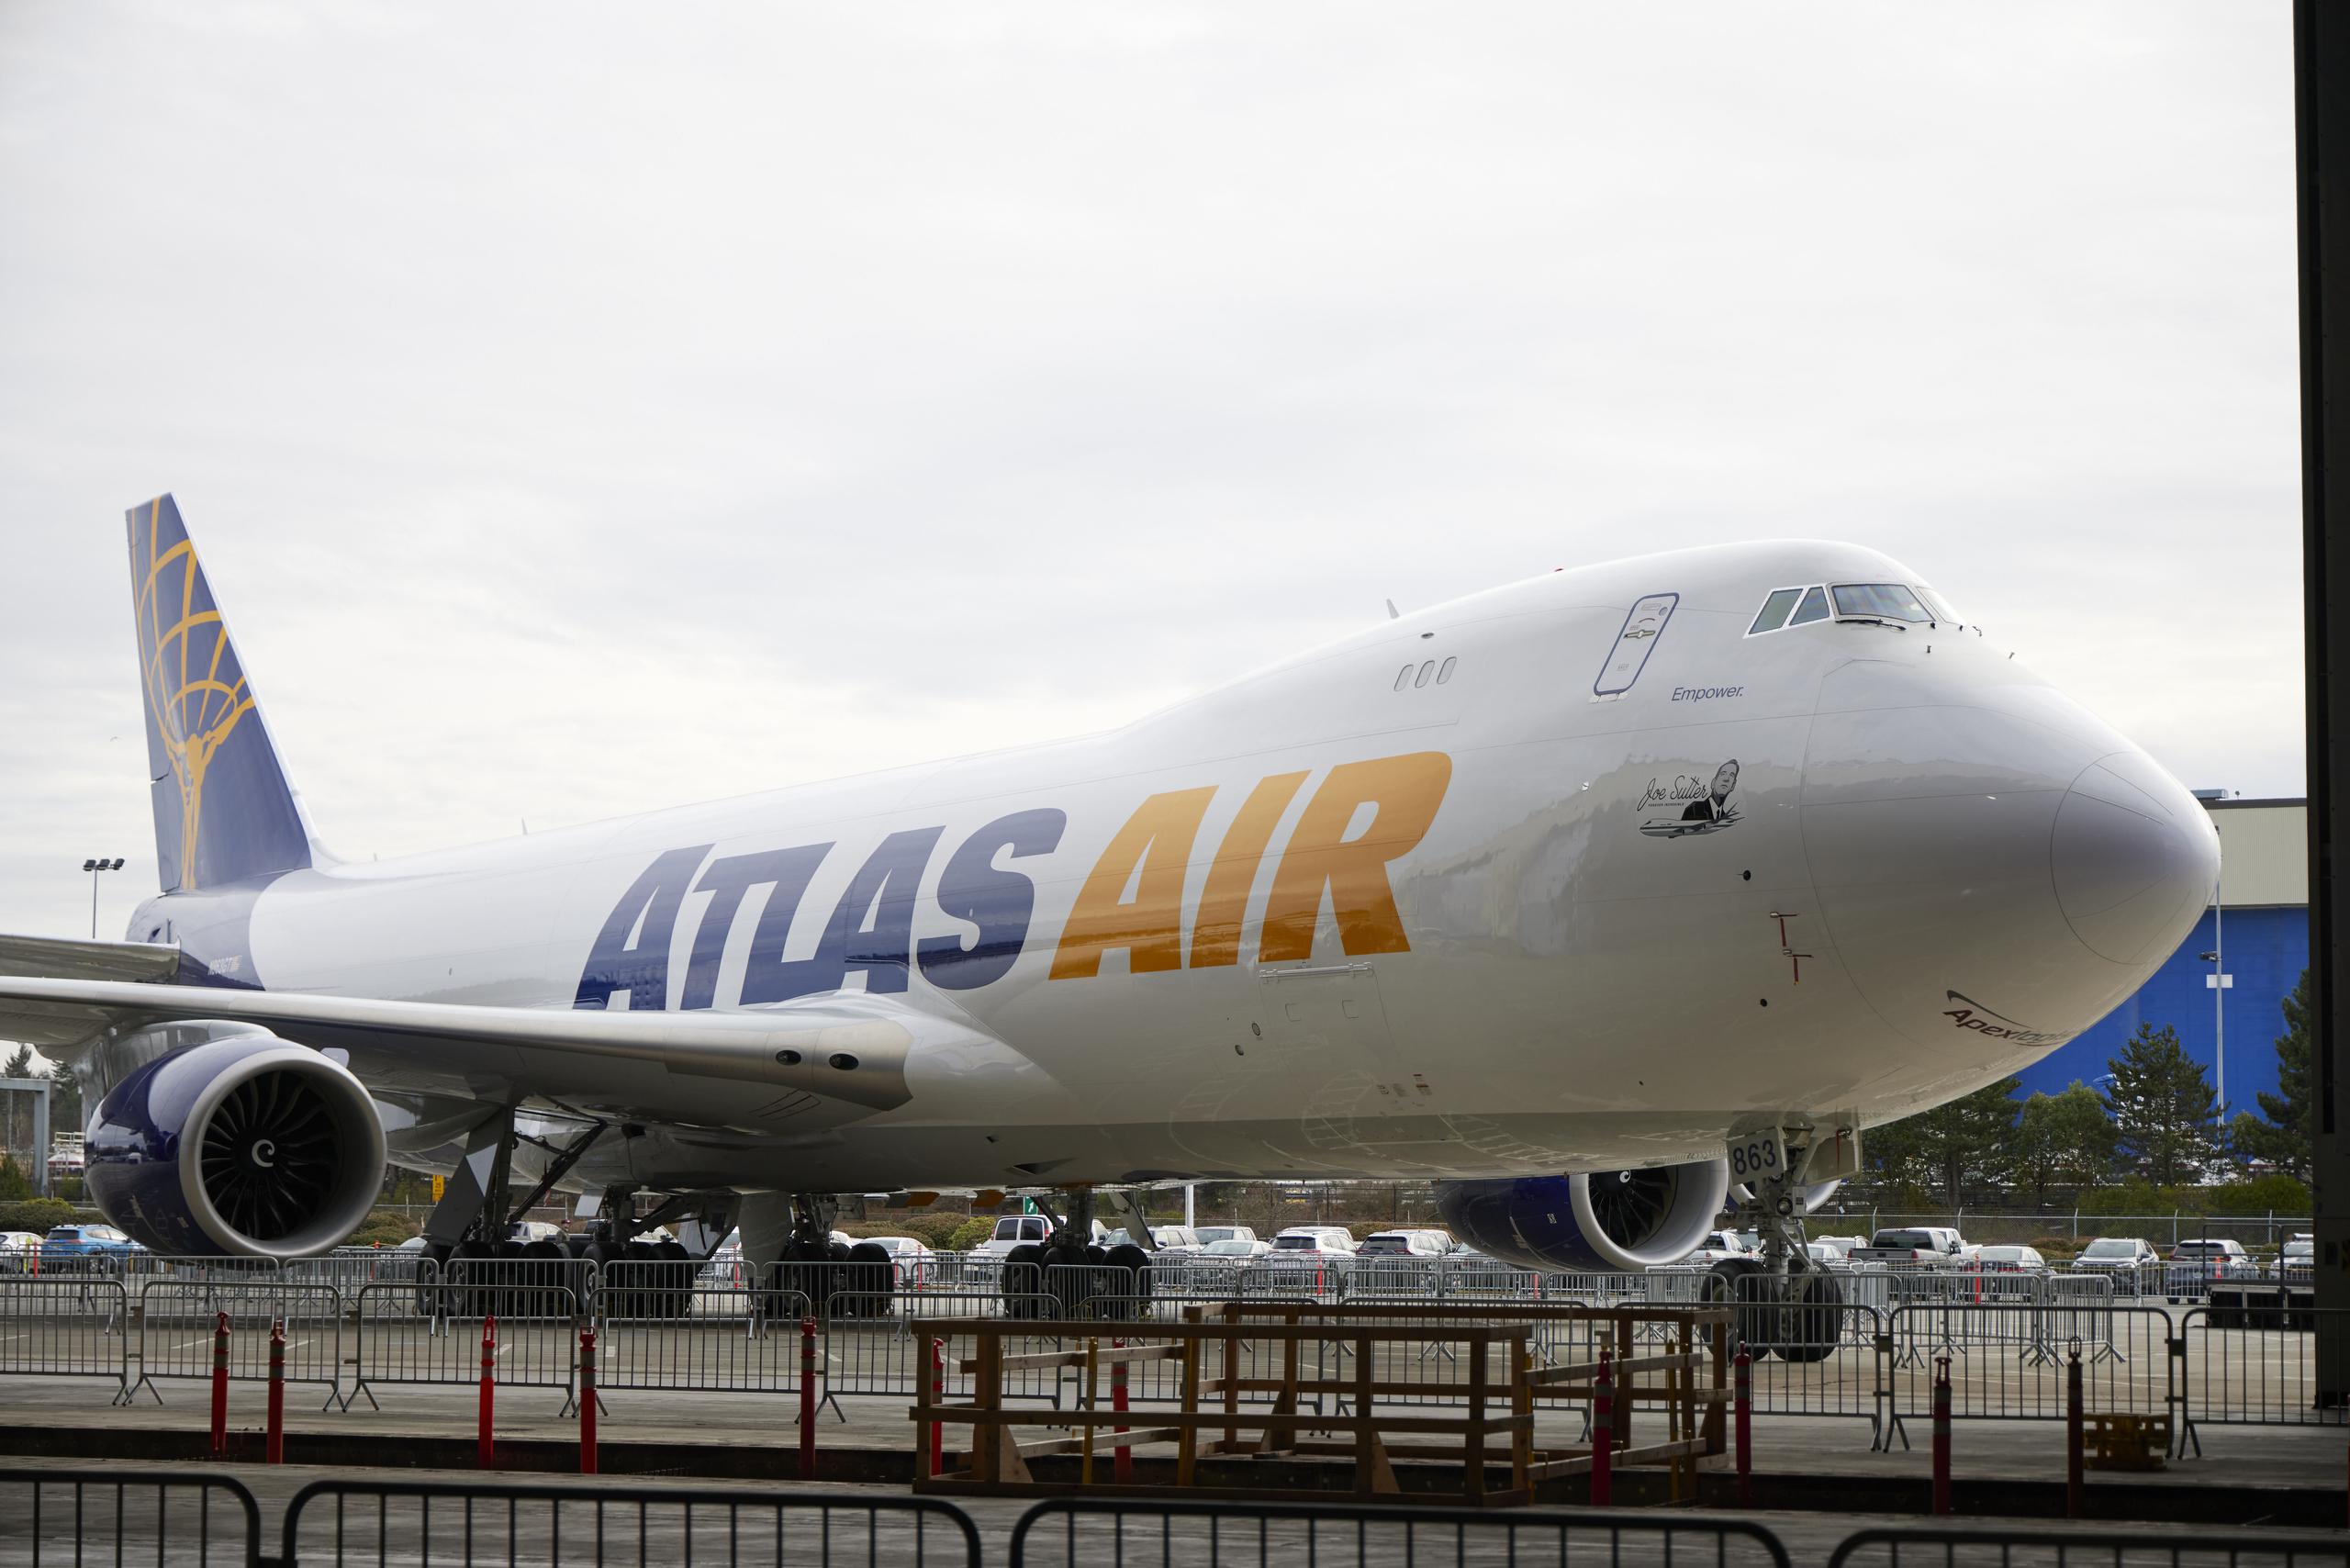 El avión aterrizó de manera segura el jueves por la noche “tras experimentar un mal funcionamiento del motor poco después de la salida”, dijo el vocero de Atlas Air en un comunicado el viernes.